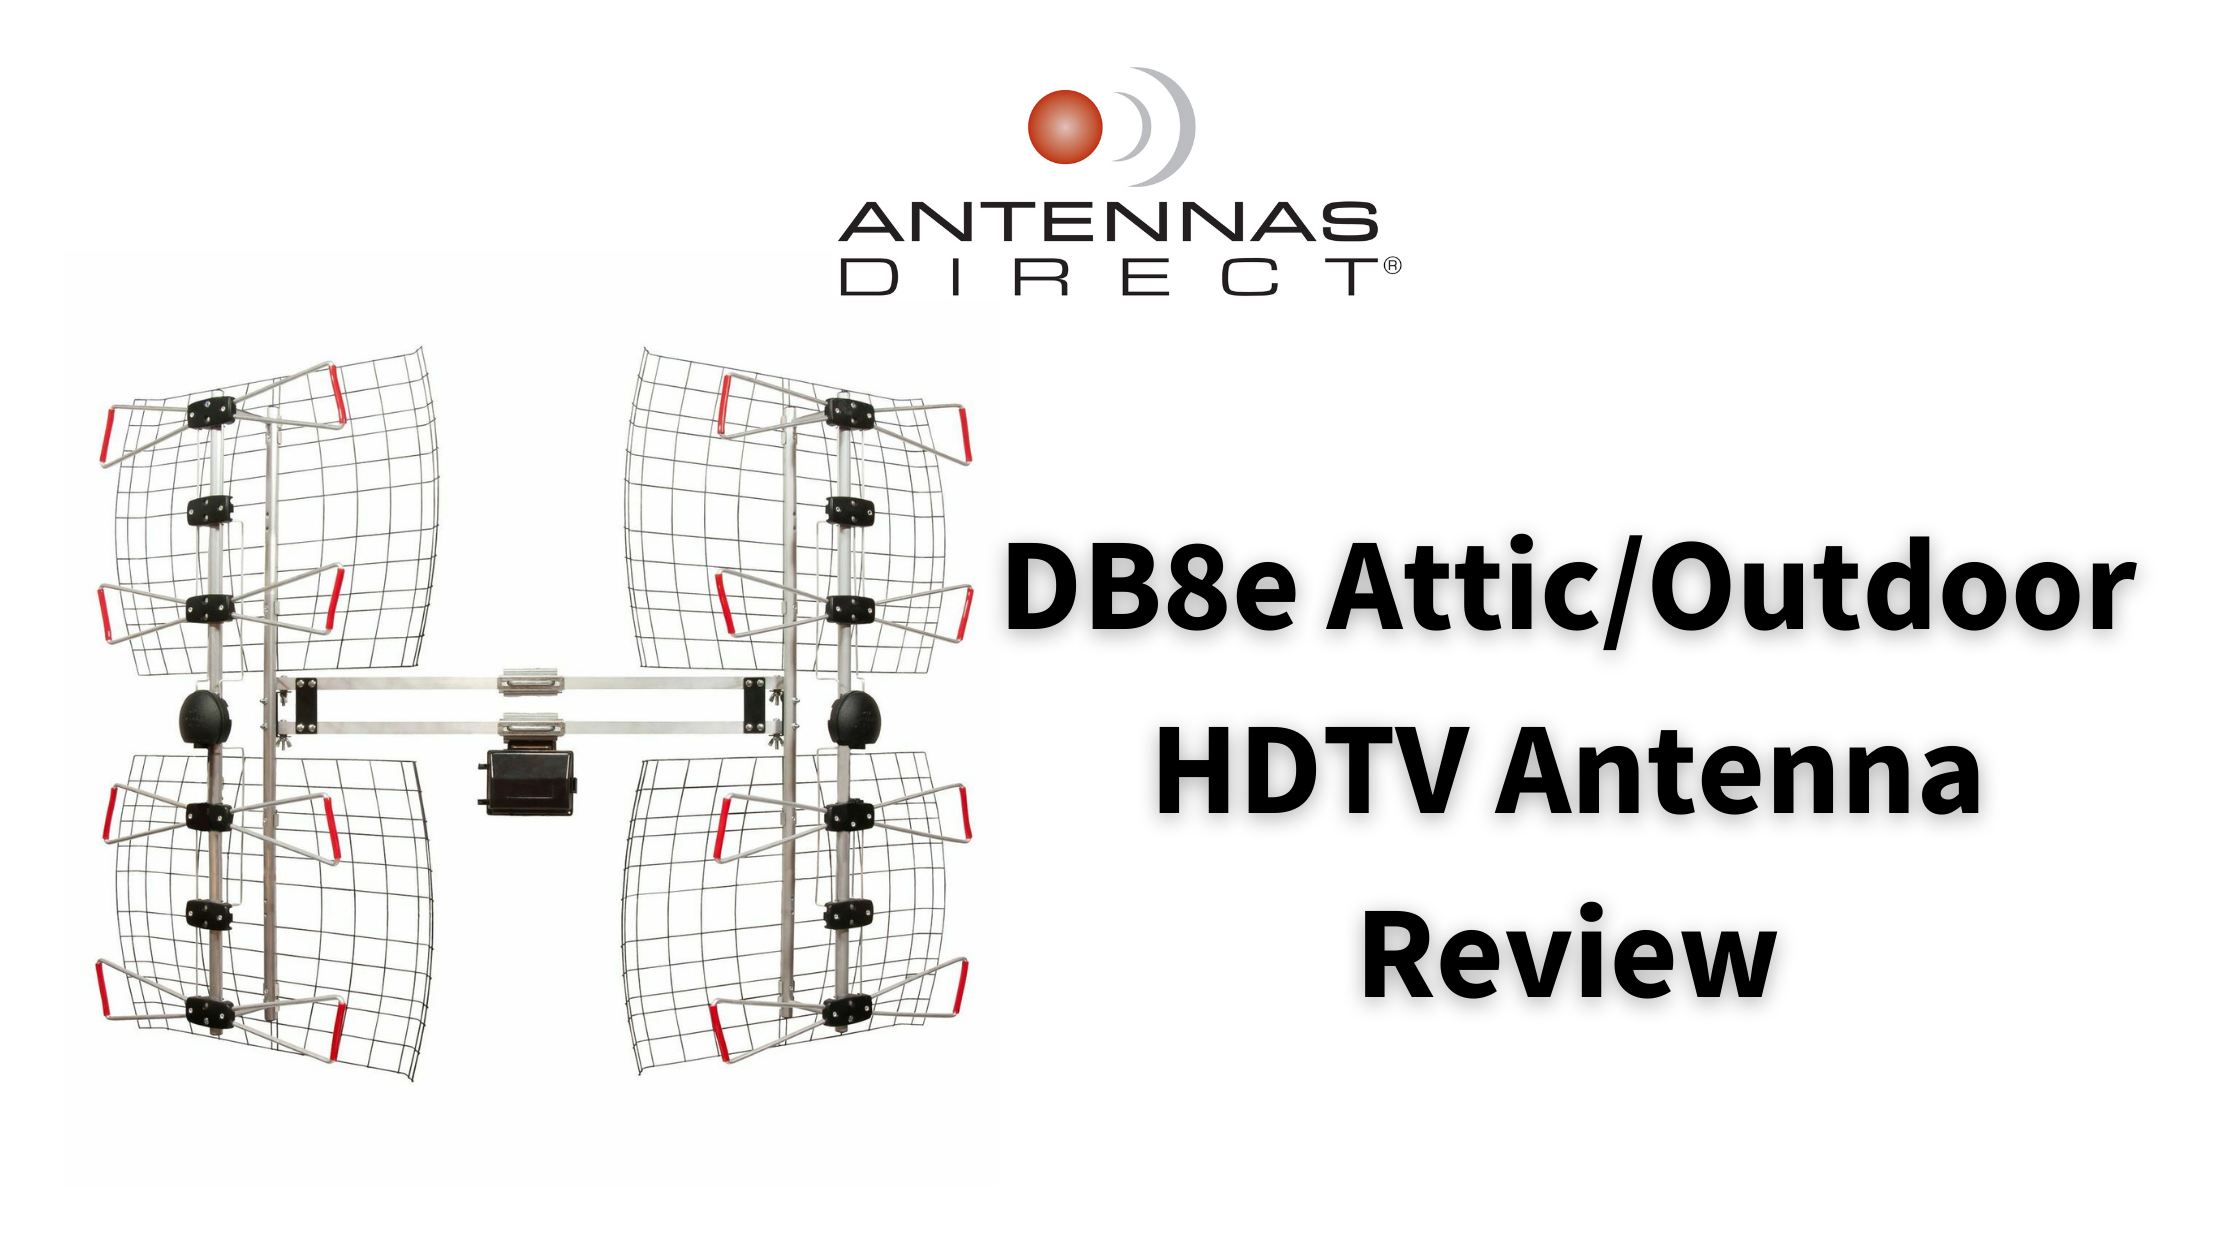 DB8e Attic/outdoor HDTV antenna review Antennas Direct